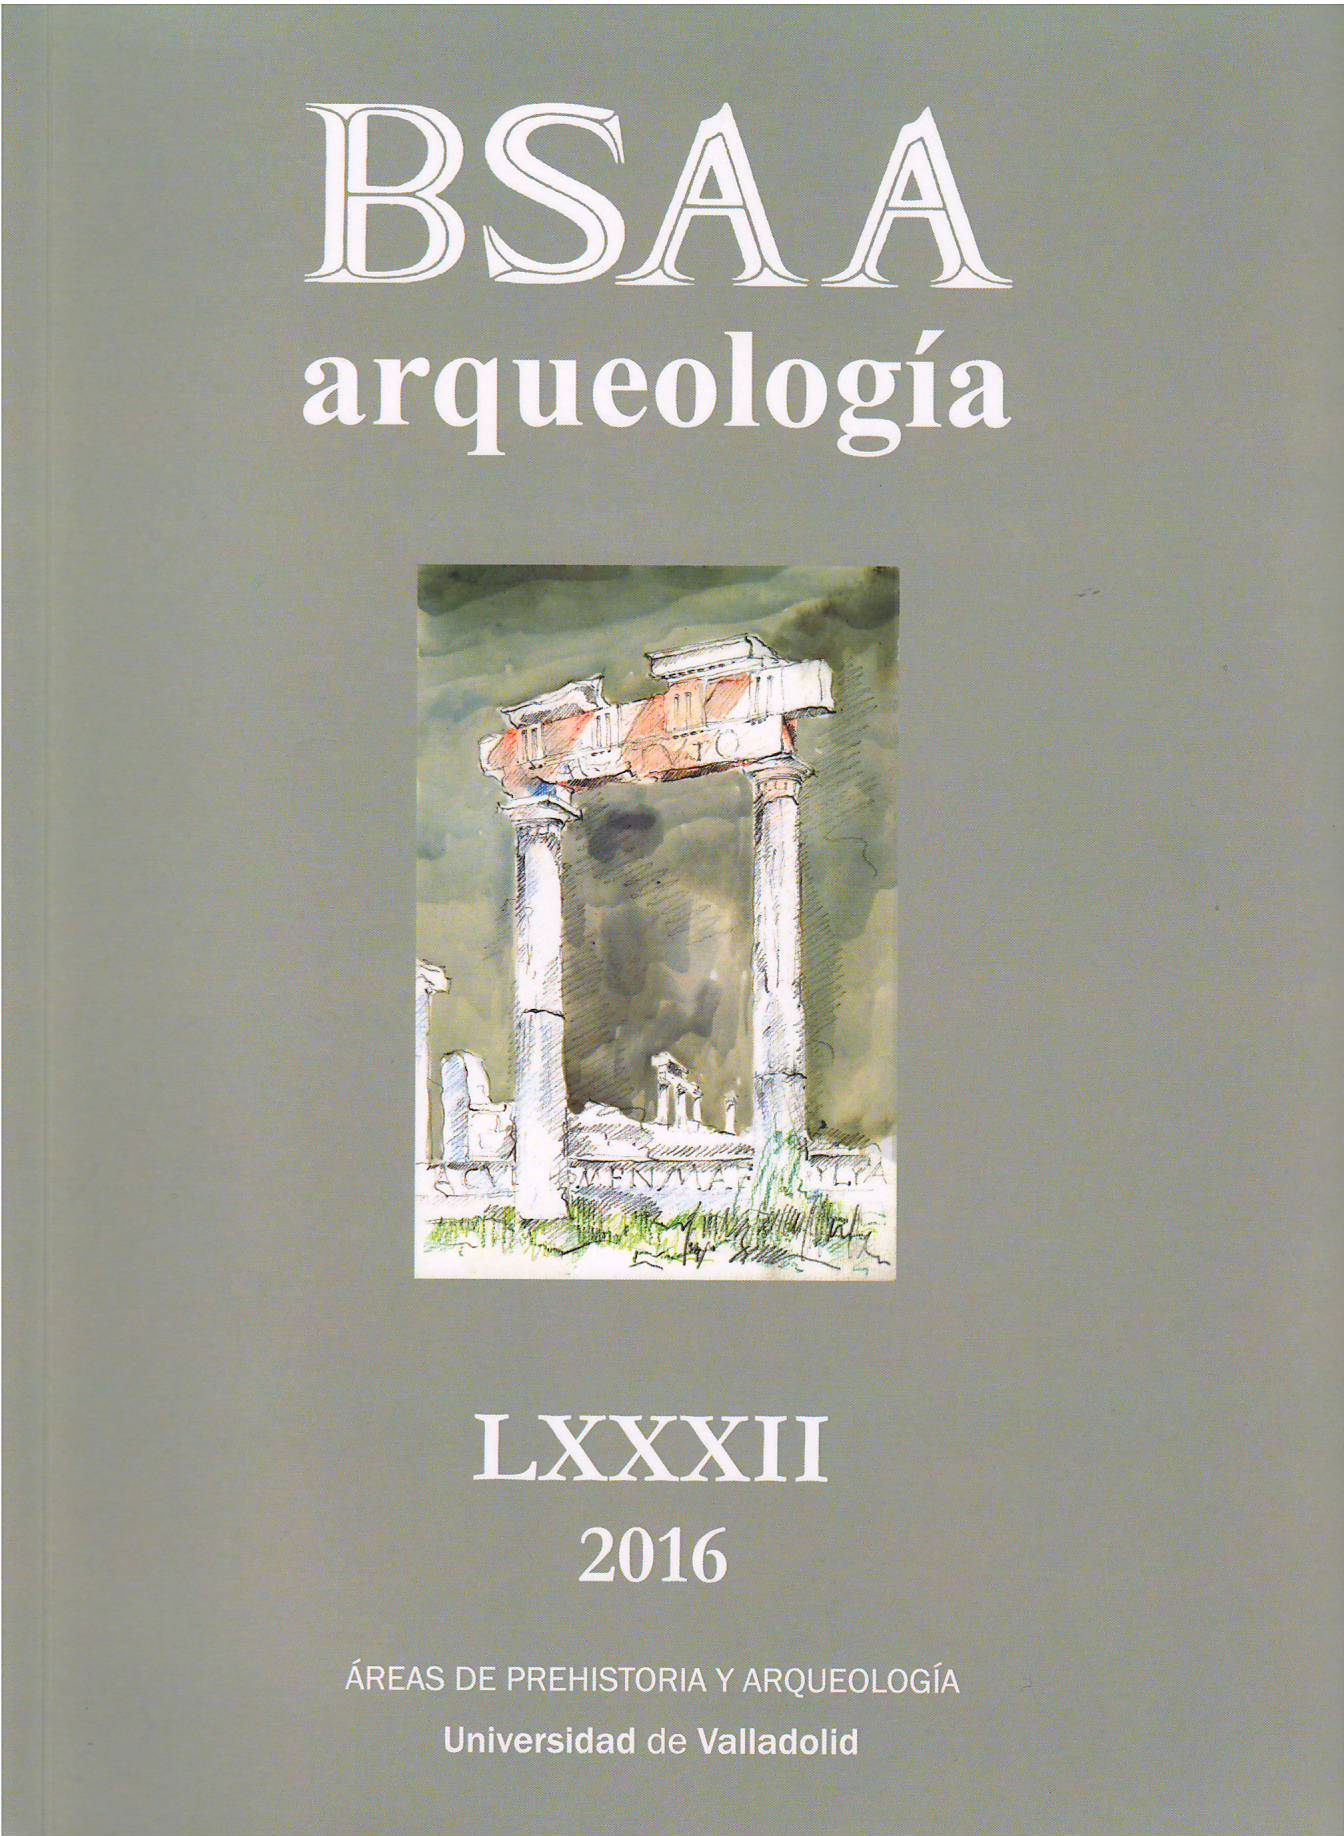 Imagen de portada de la revista BSAA Arqueología